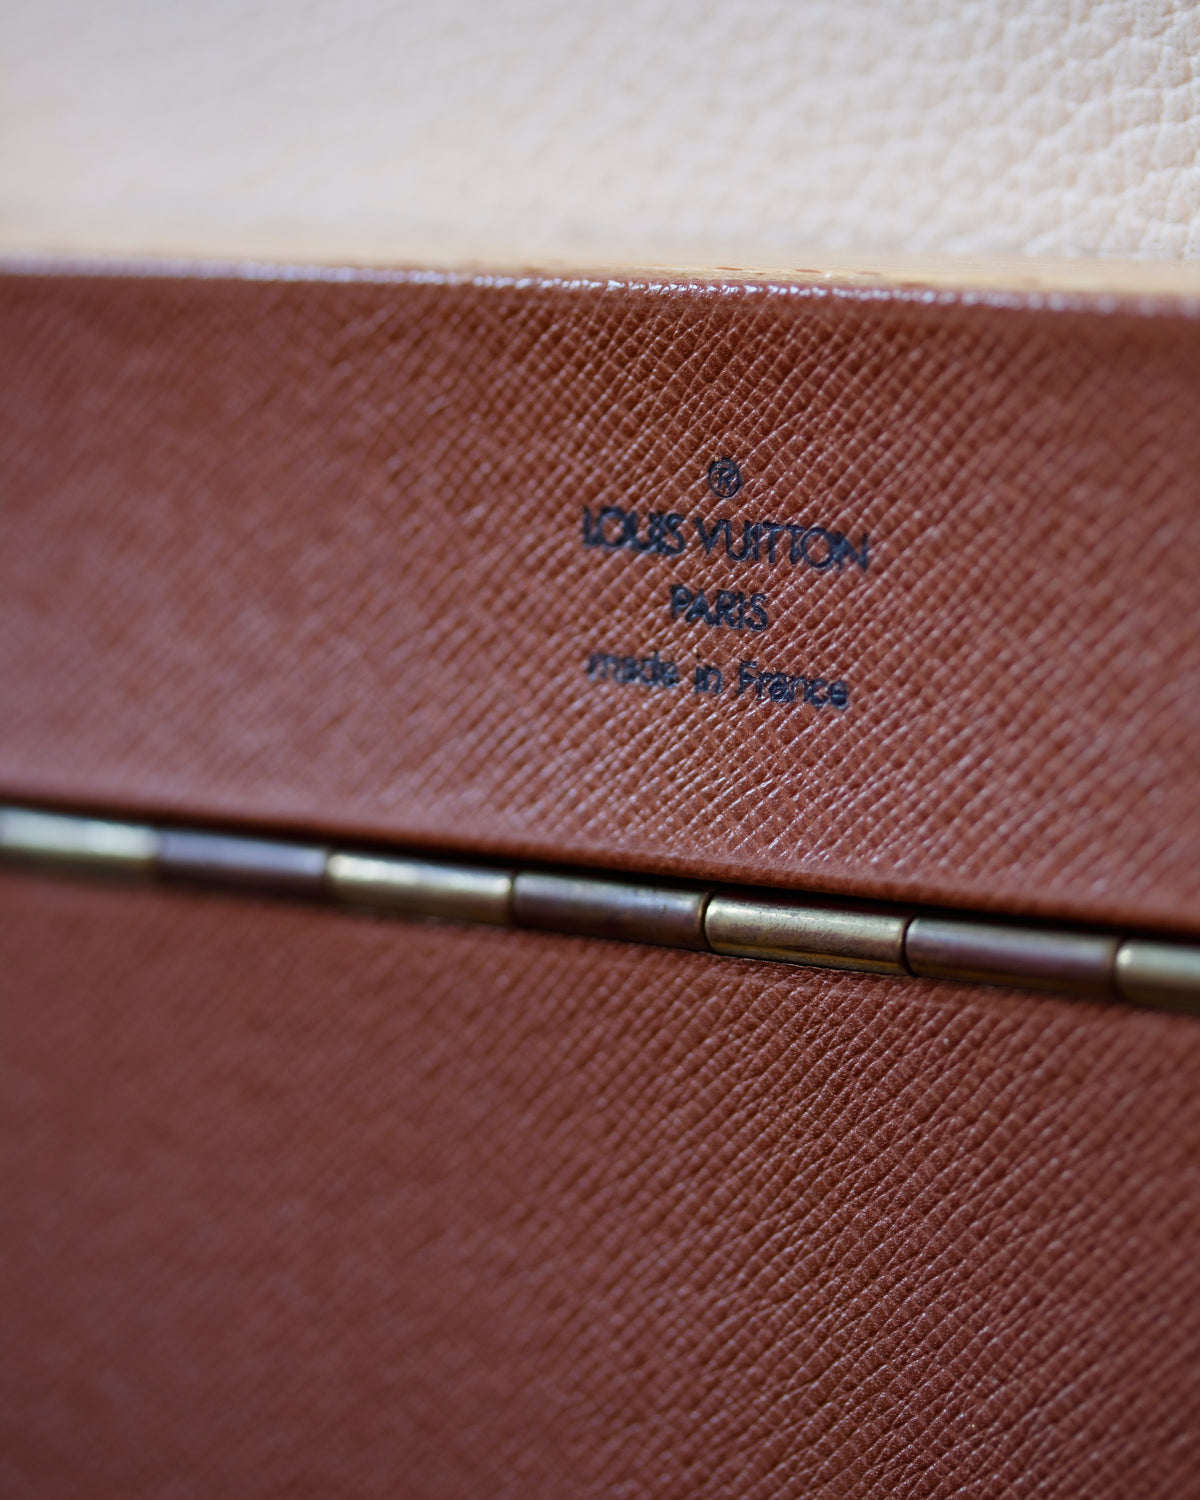 Louis Vuitton &quot;Stokowski&quot; desk trunk